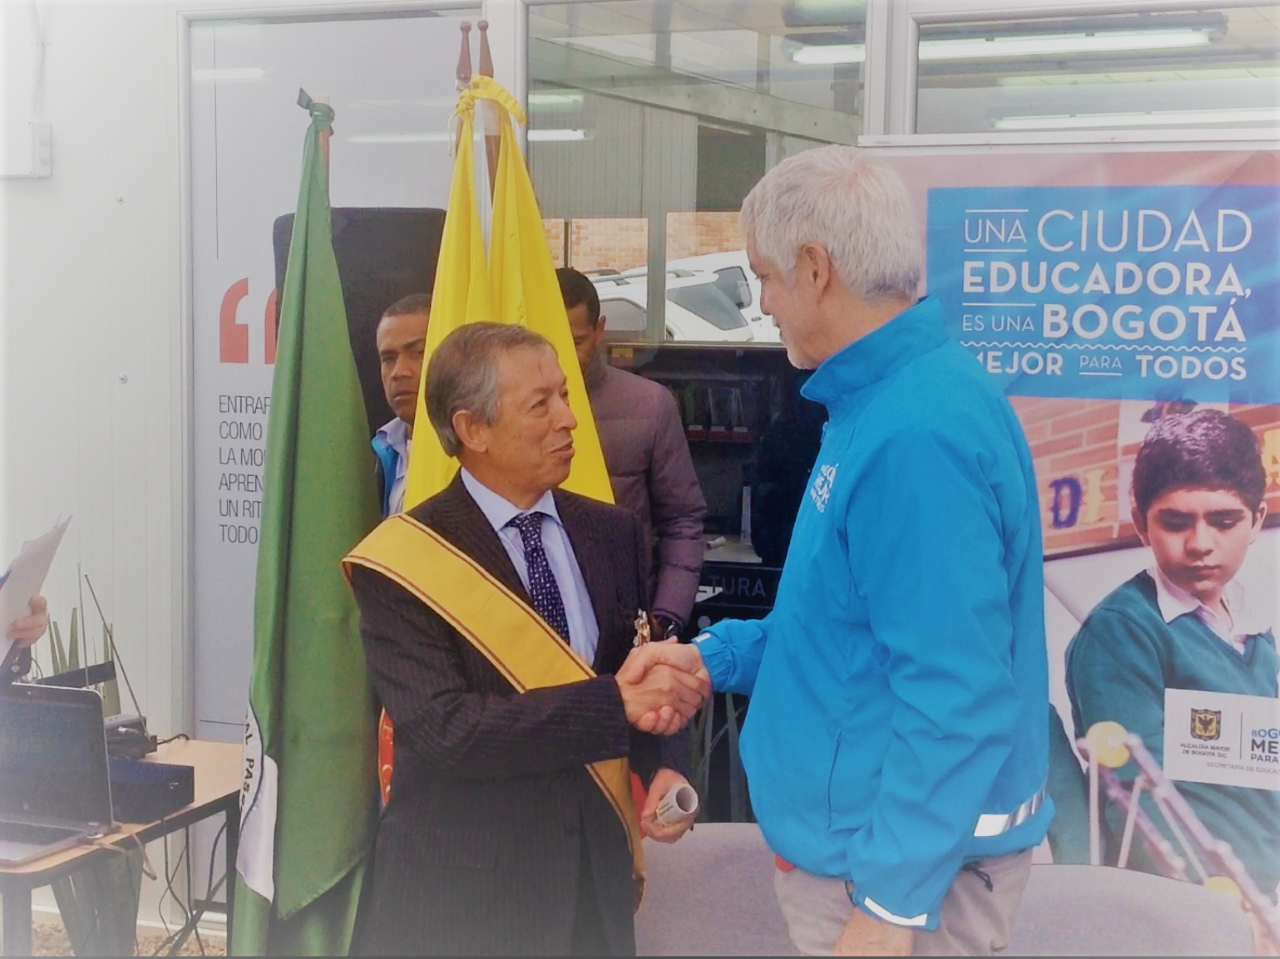 Distrito capital reconoce a Telésforo Pedraza por el servicio a Bogotá durante su vida pública